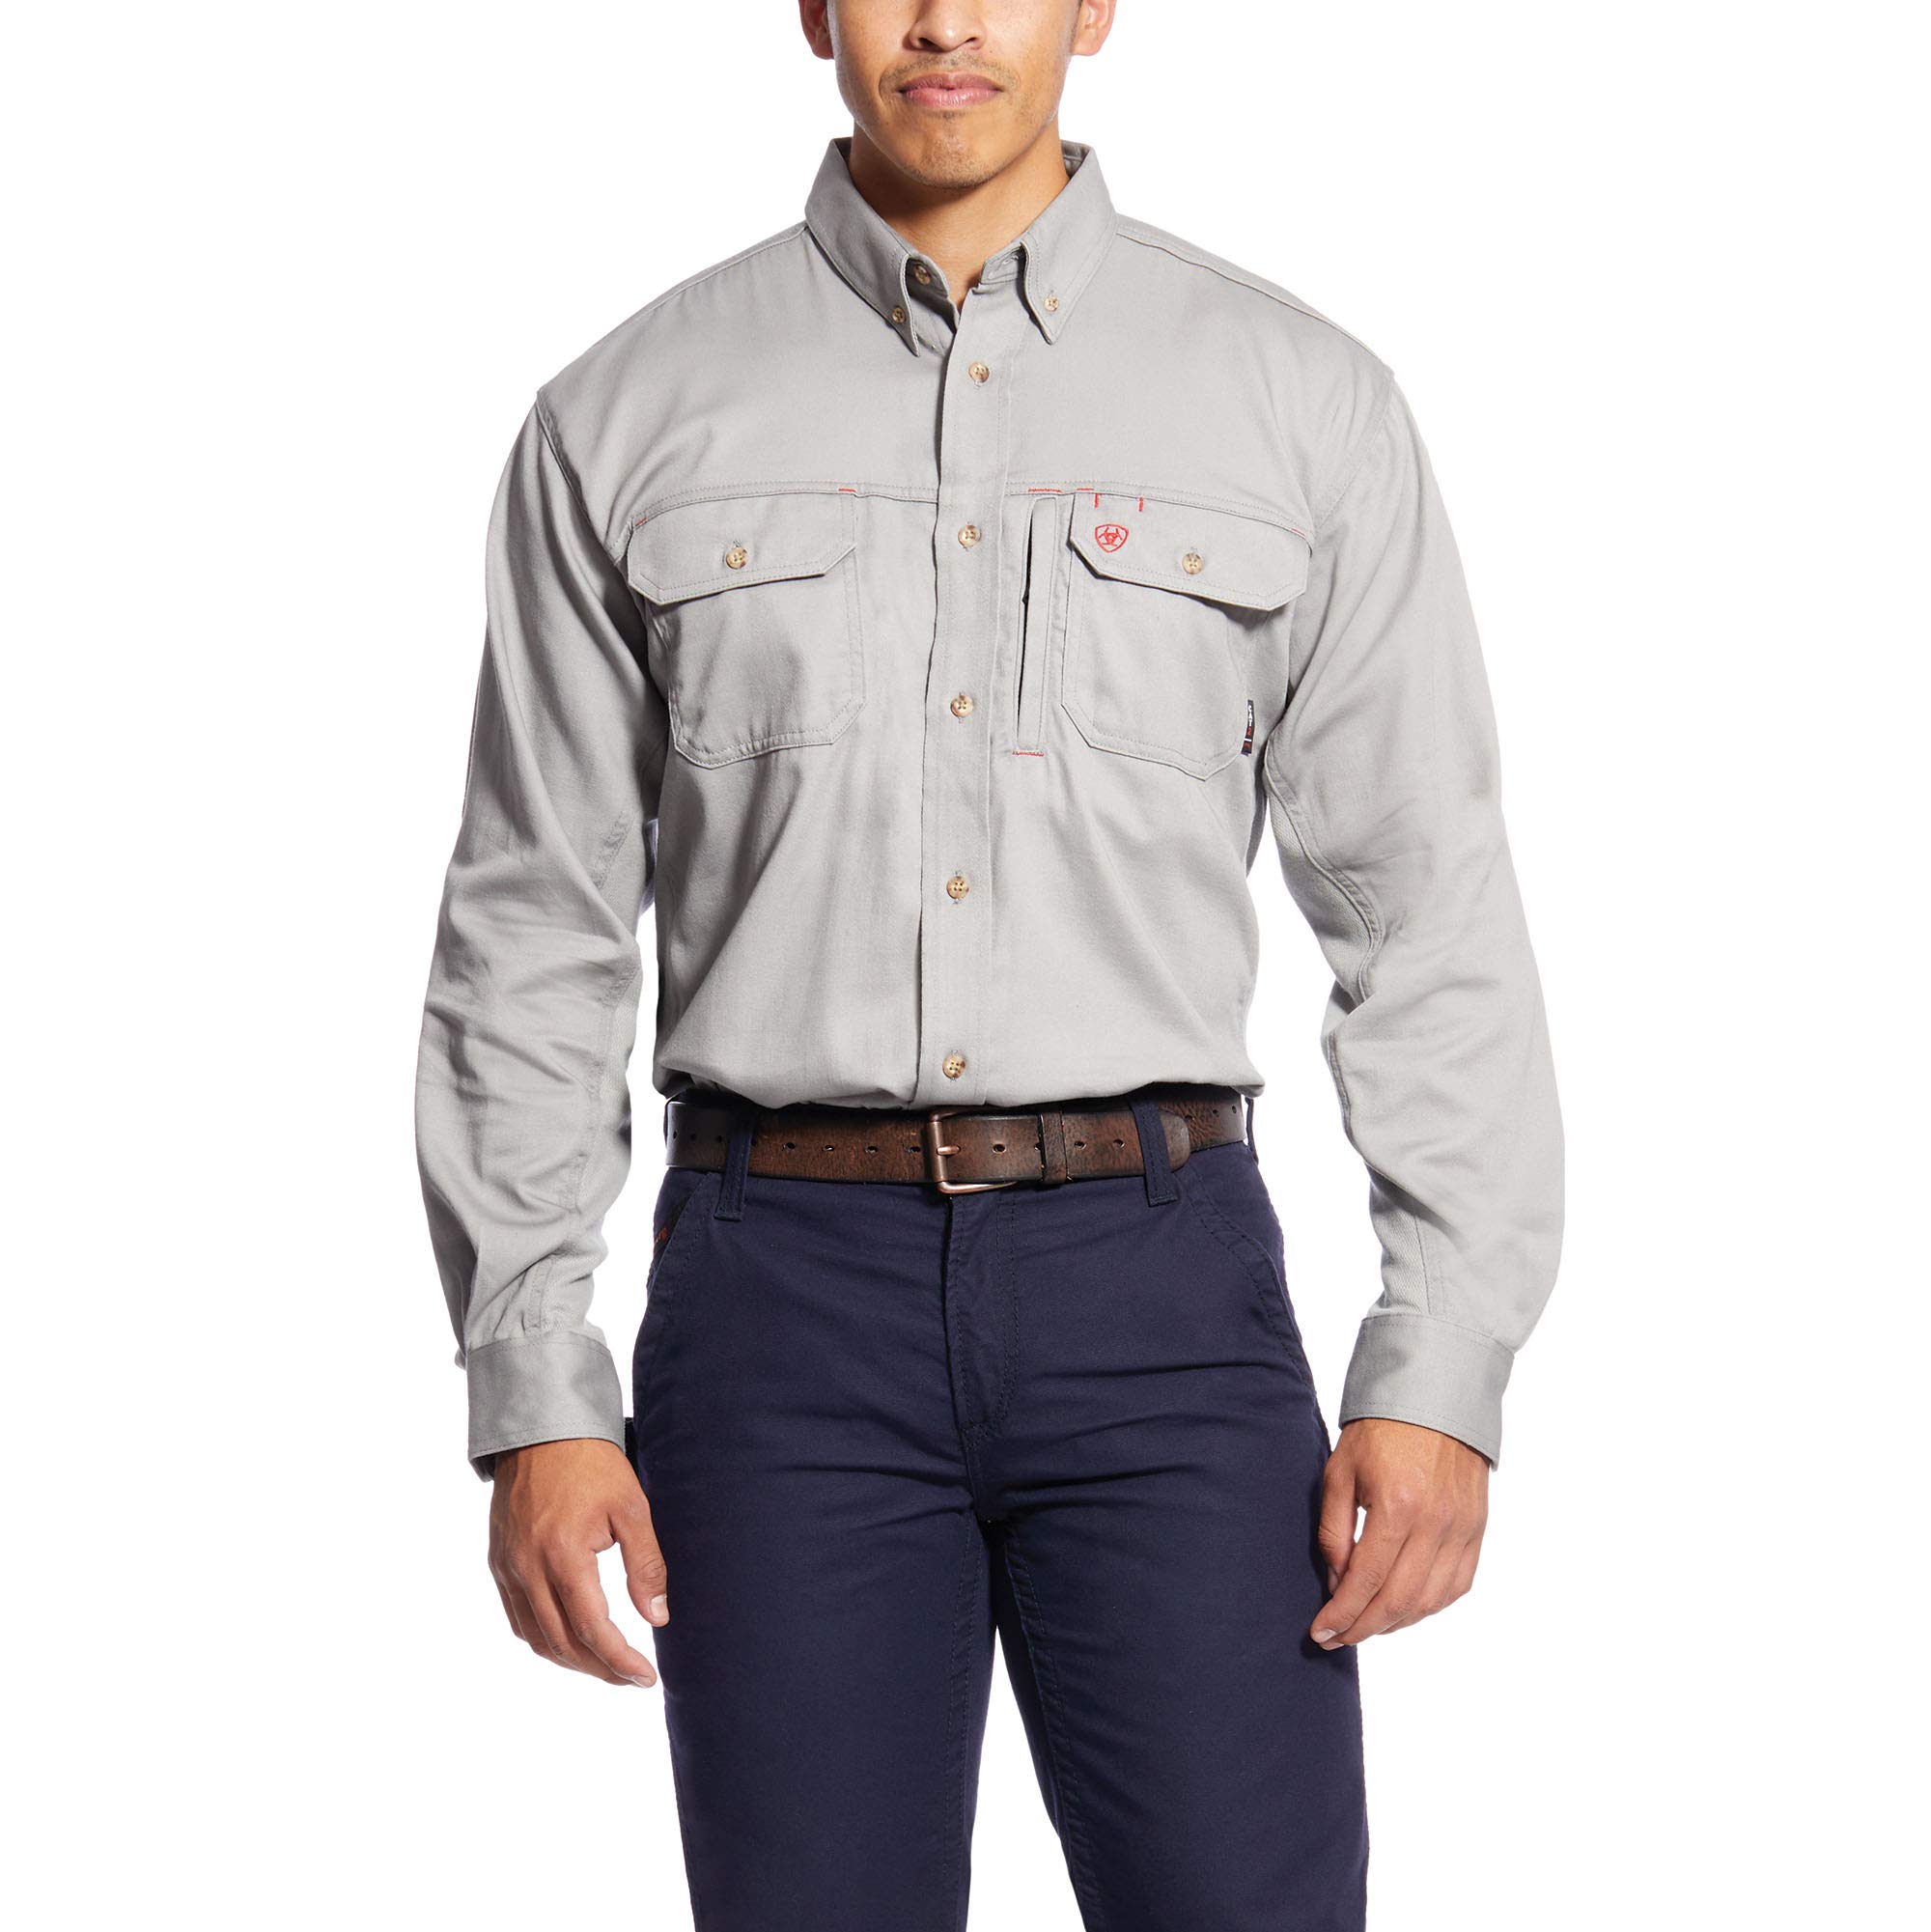 Ariat FR Solid Vent Work Shirt - Men’s Button-Down Long Sleeve Performance Shirt